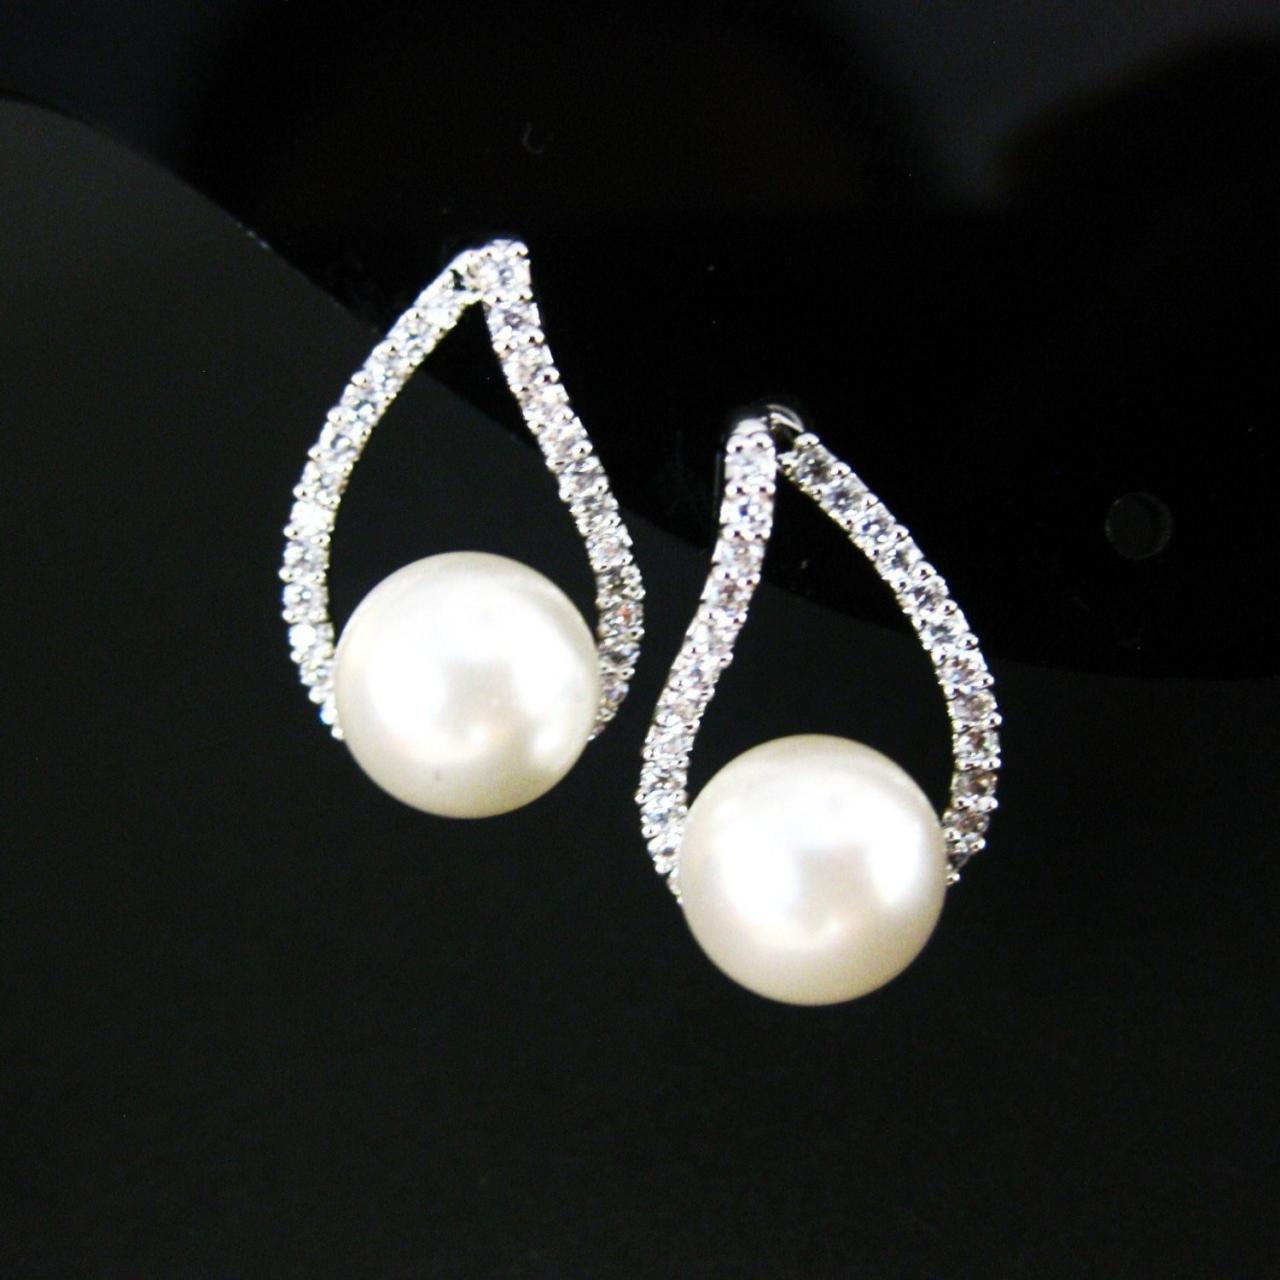 Bridal Pearl Earrings Wedding Jewelry Cubic Zirconia Teardrop Earrings Swarovski 8mm Pearl Silver Stud Earrings Bridesmaids Gift (e105)